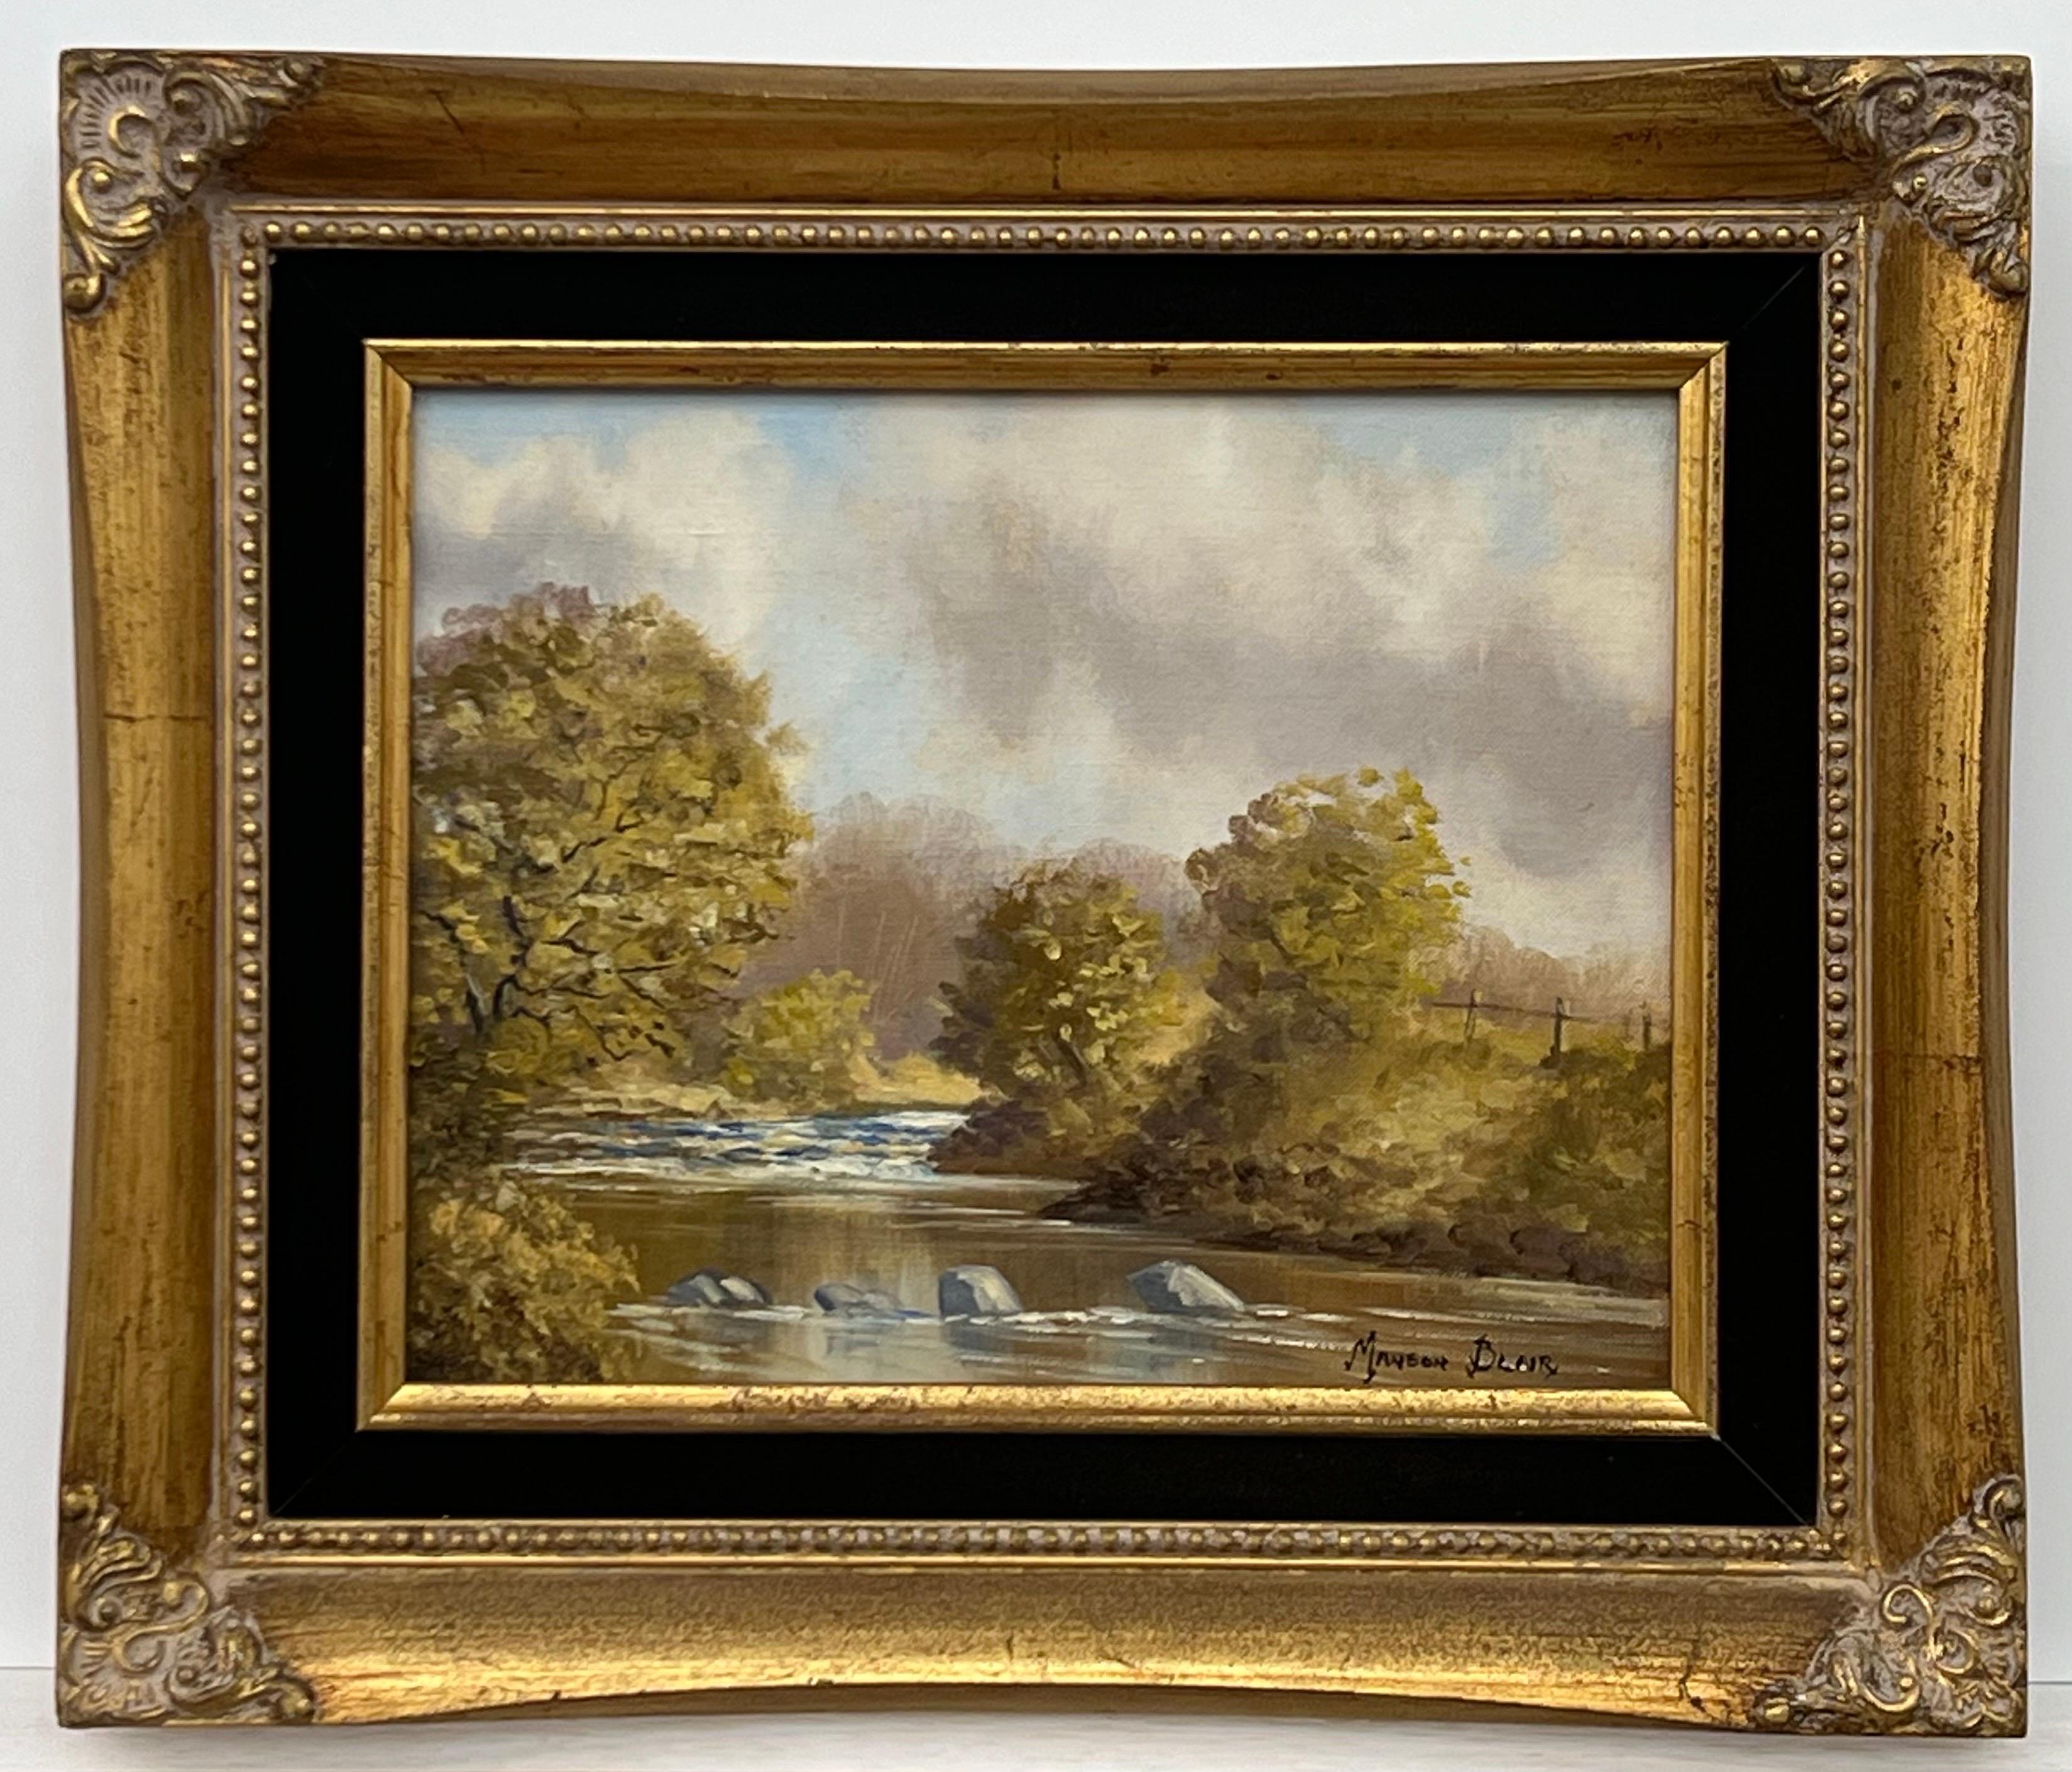 Originales Ölgemälde einer Flusslandschaft in Irland des 20. Jahrhunderts des irischen Künstlers (Realismus), Painting, von Manson Blair